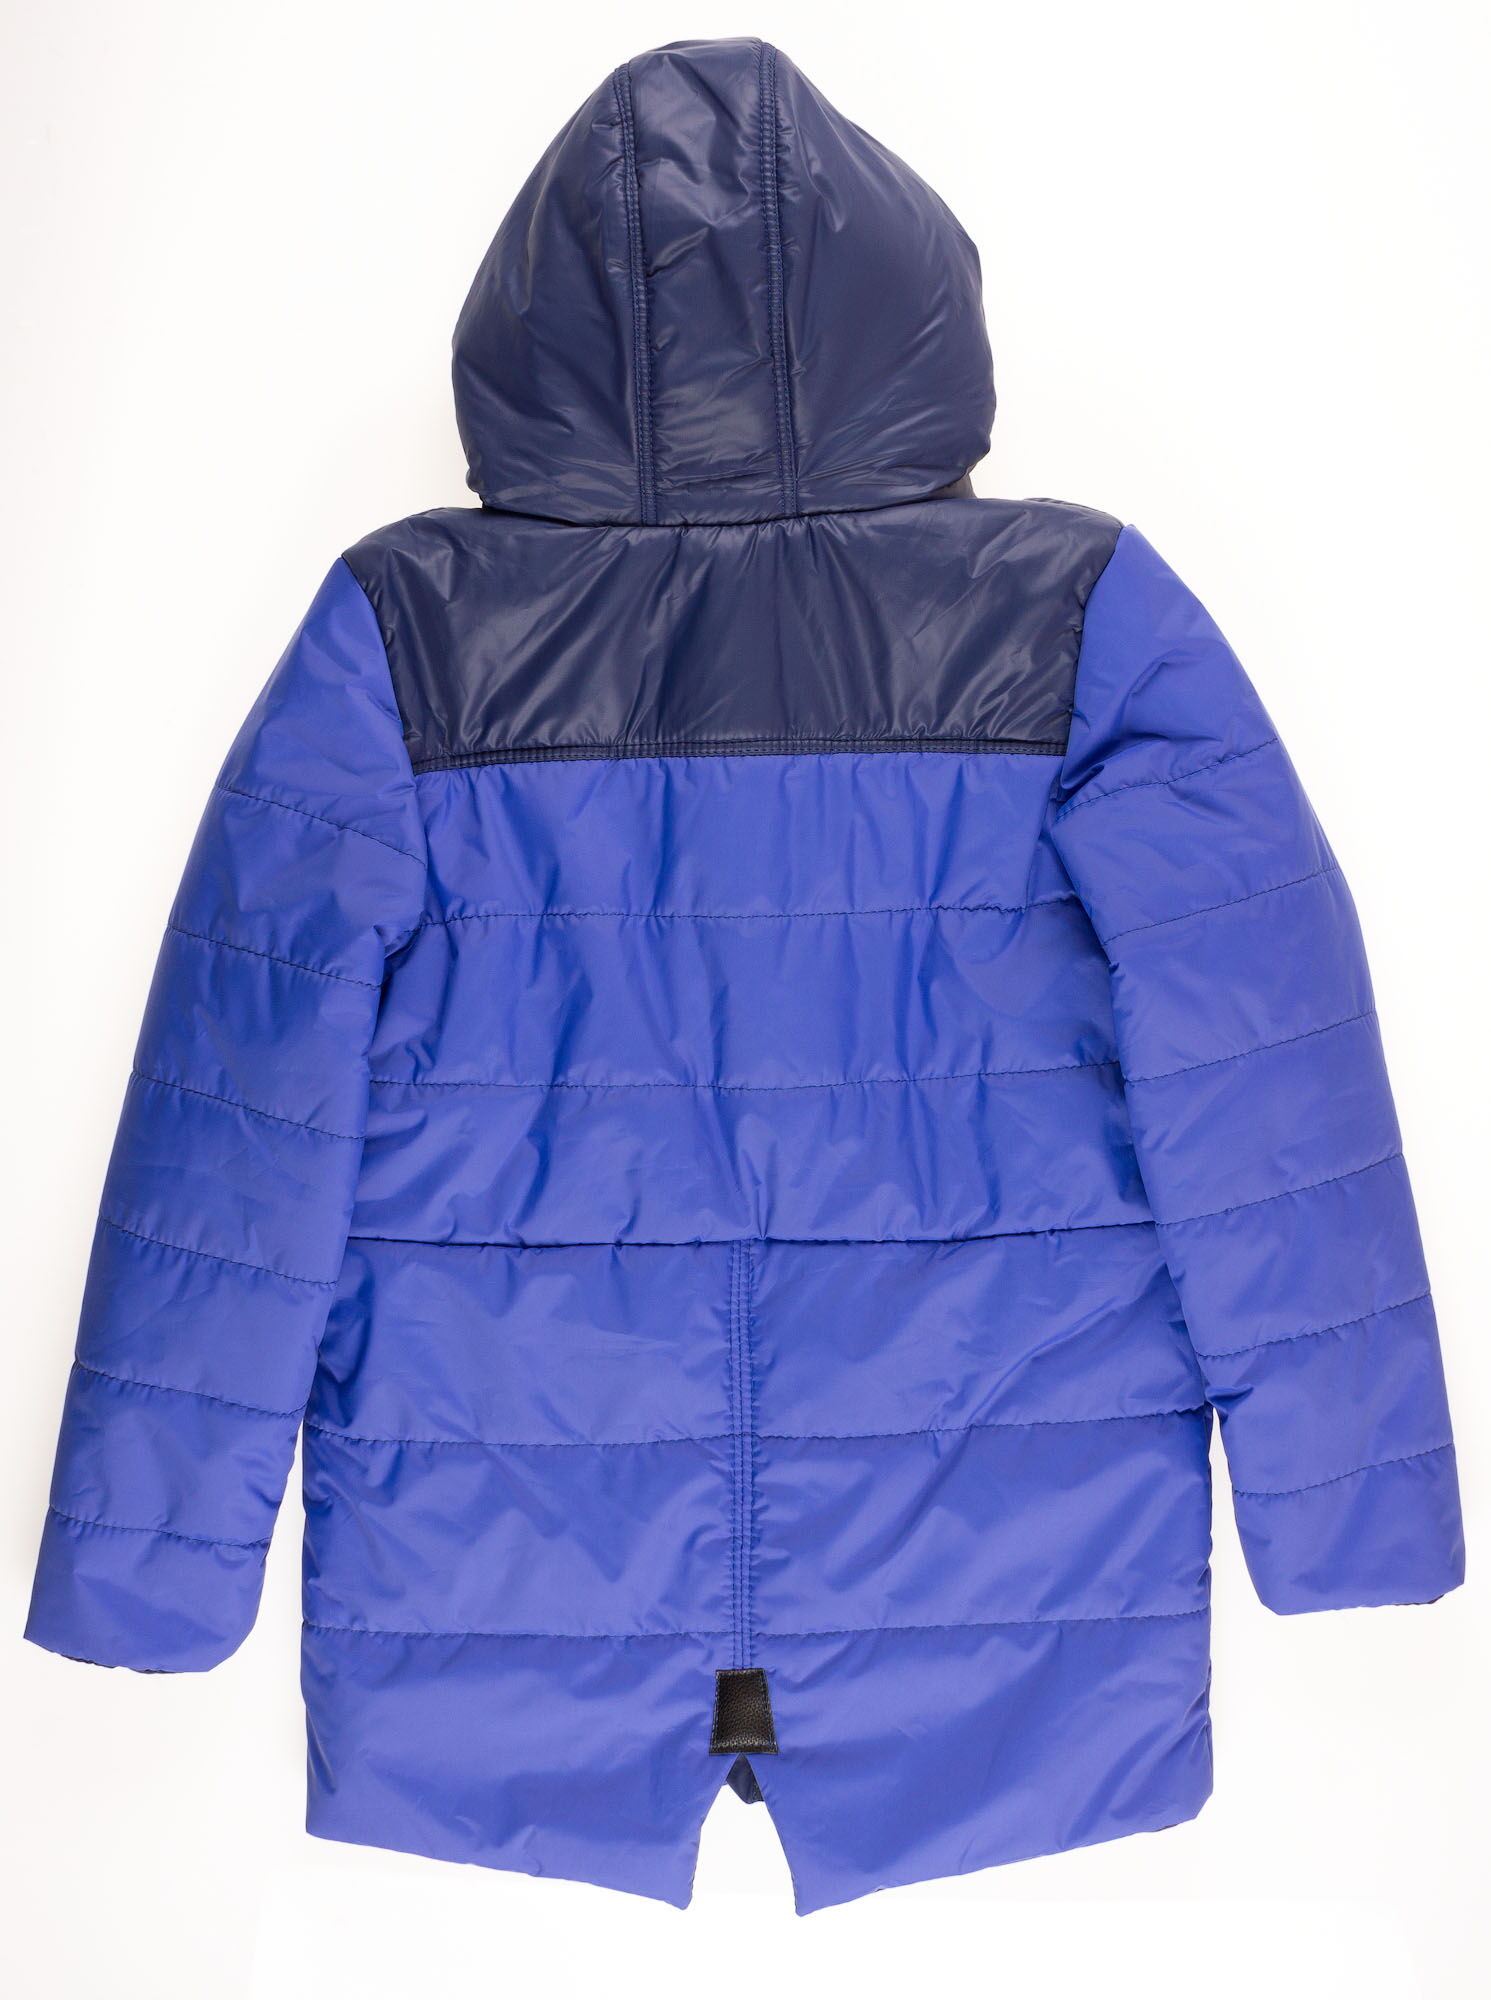 Куртка для мальчика ОДЯГАЙКО синяя 22159 - размеры